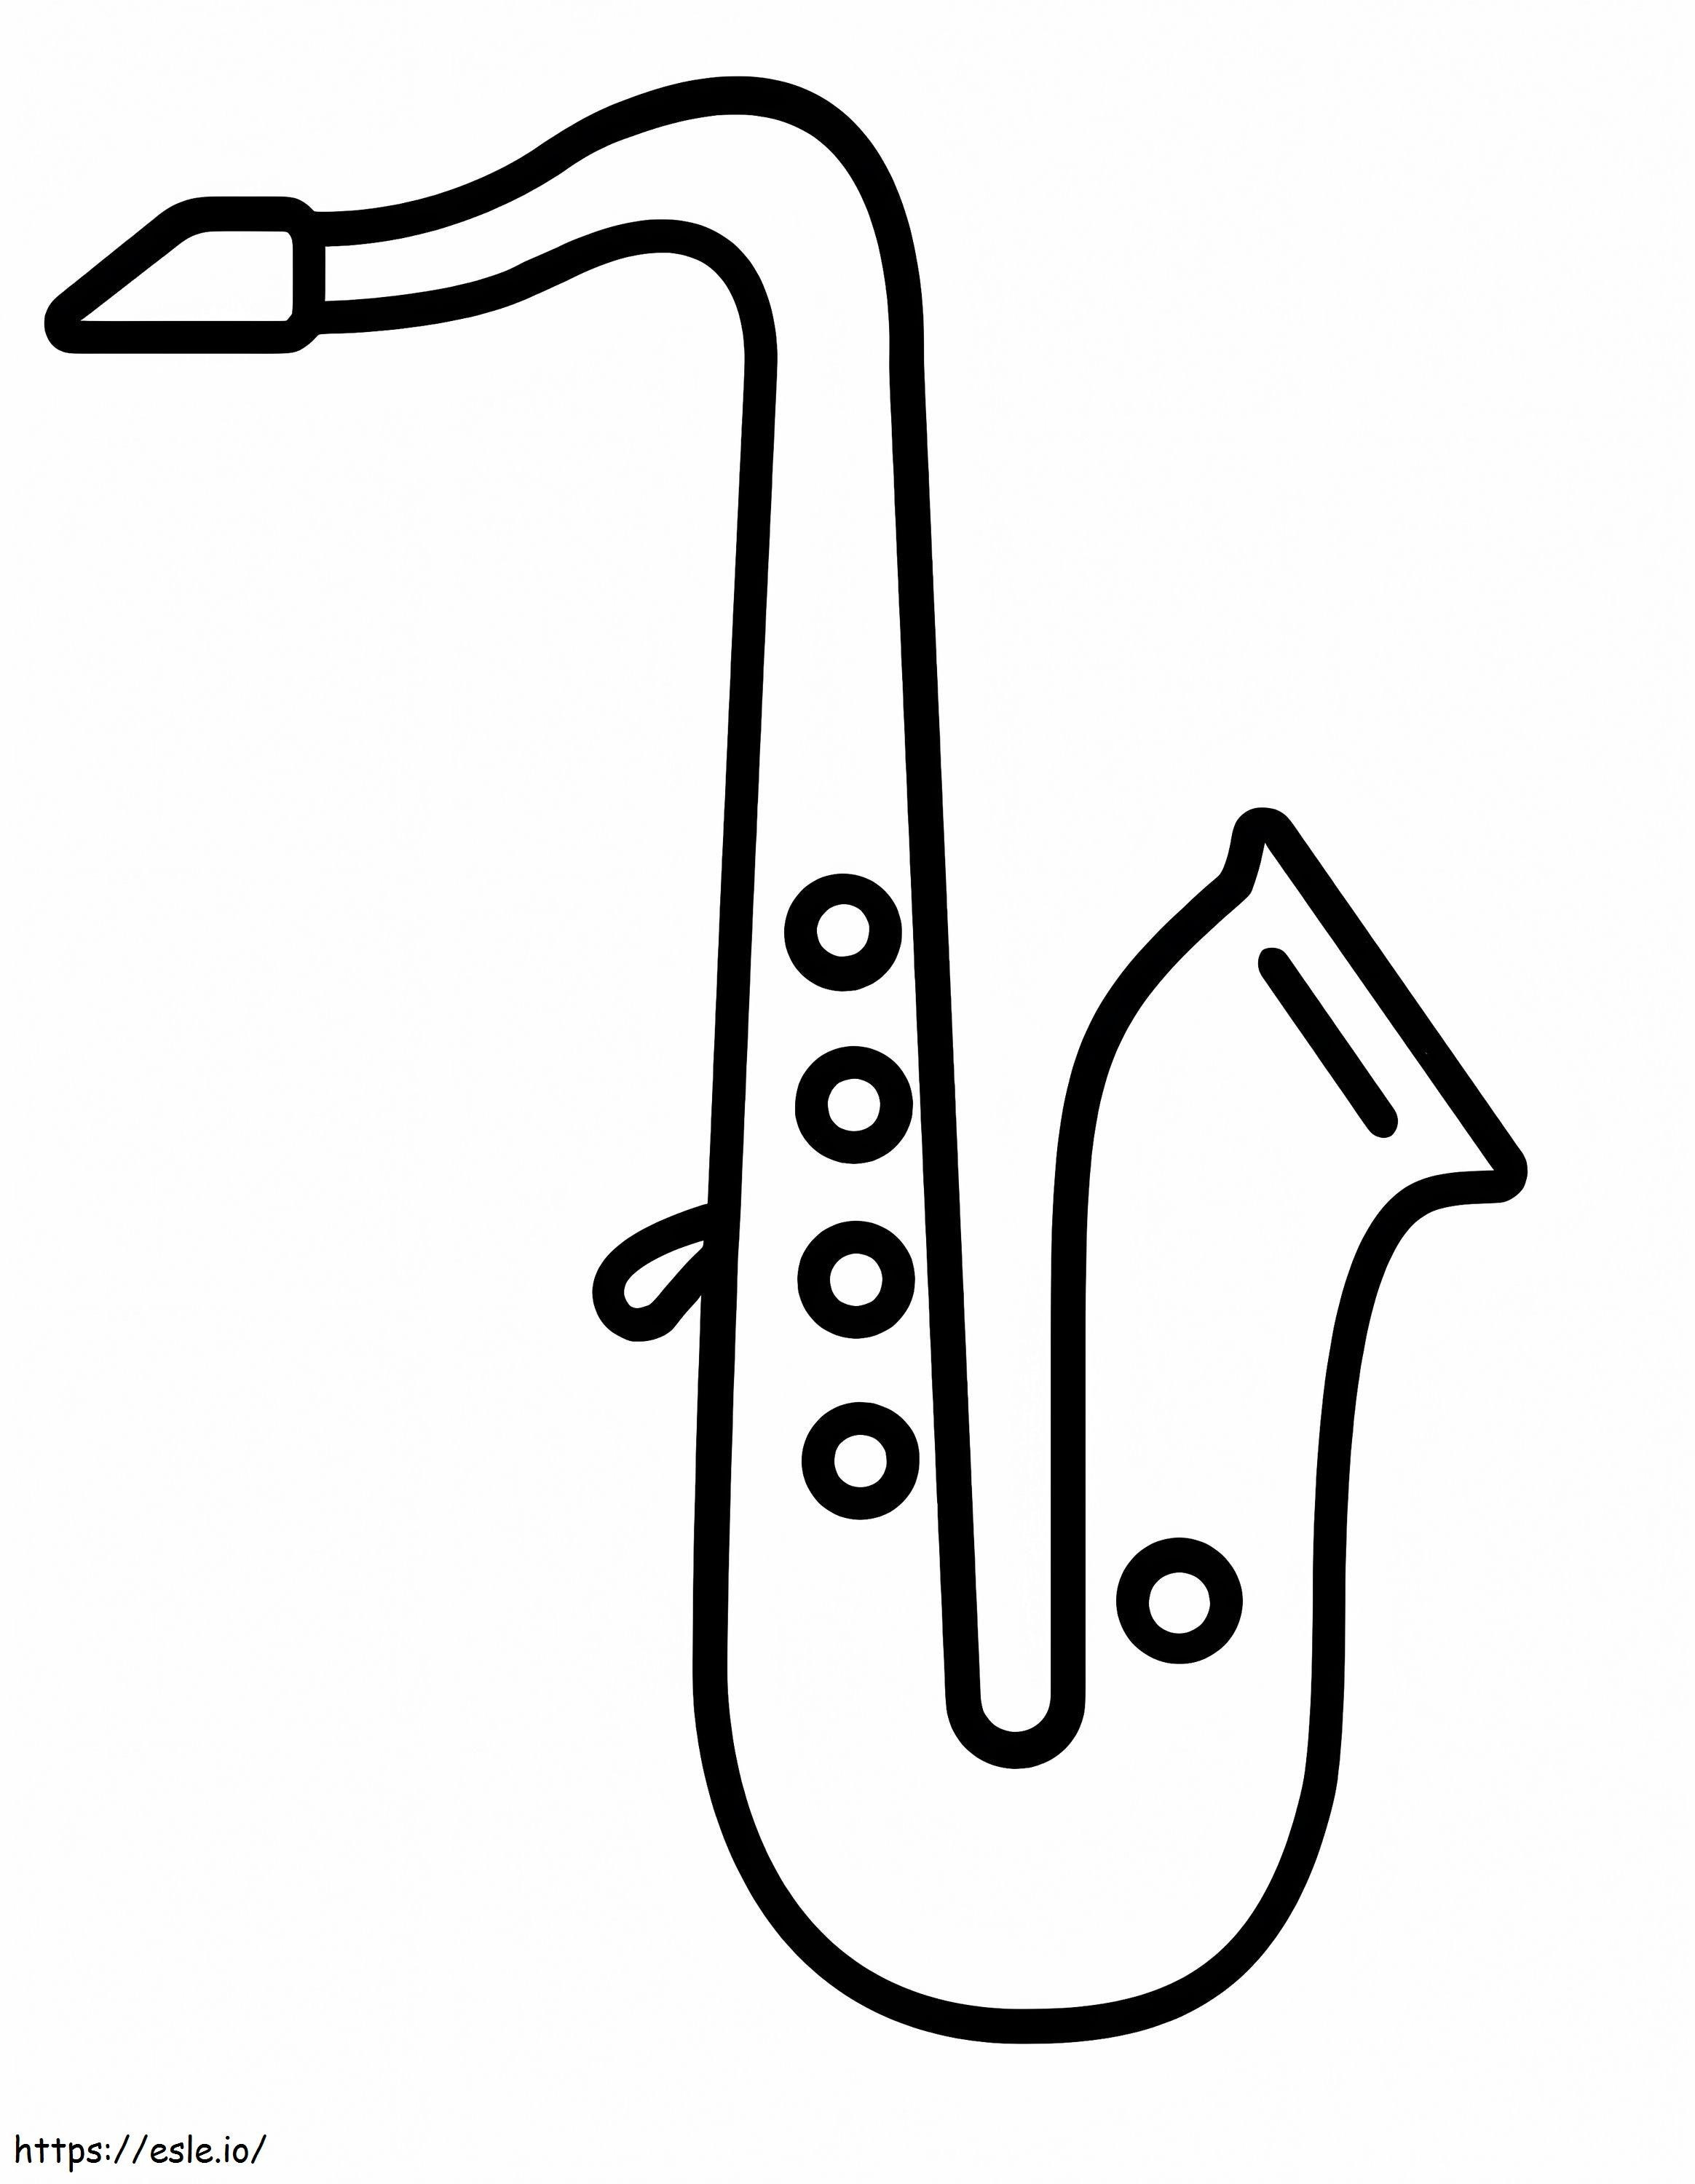 Saxofon simplu 1 de colorat